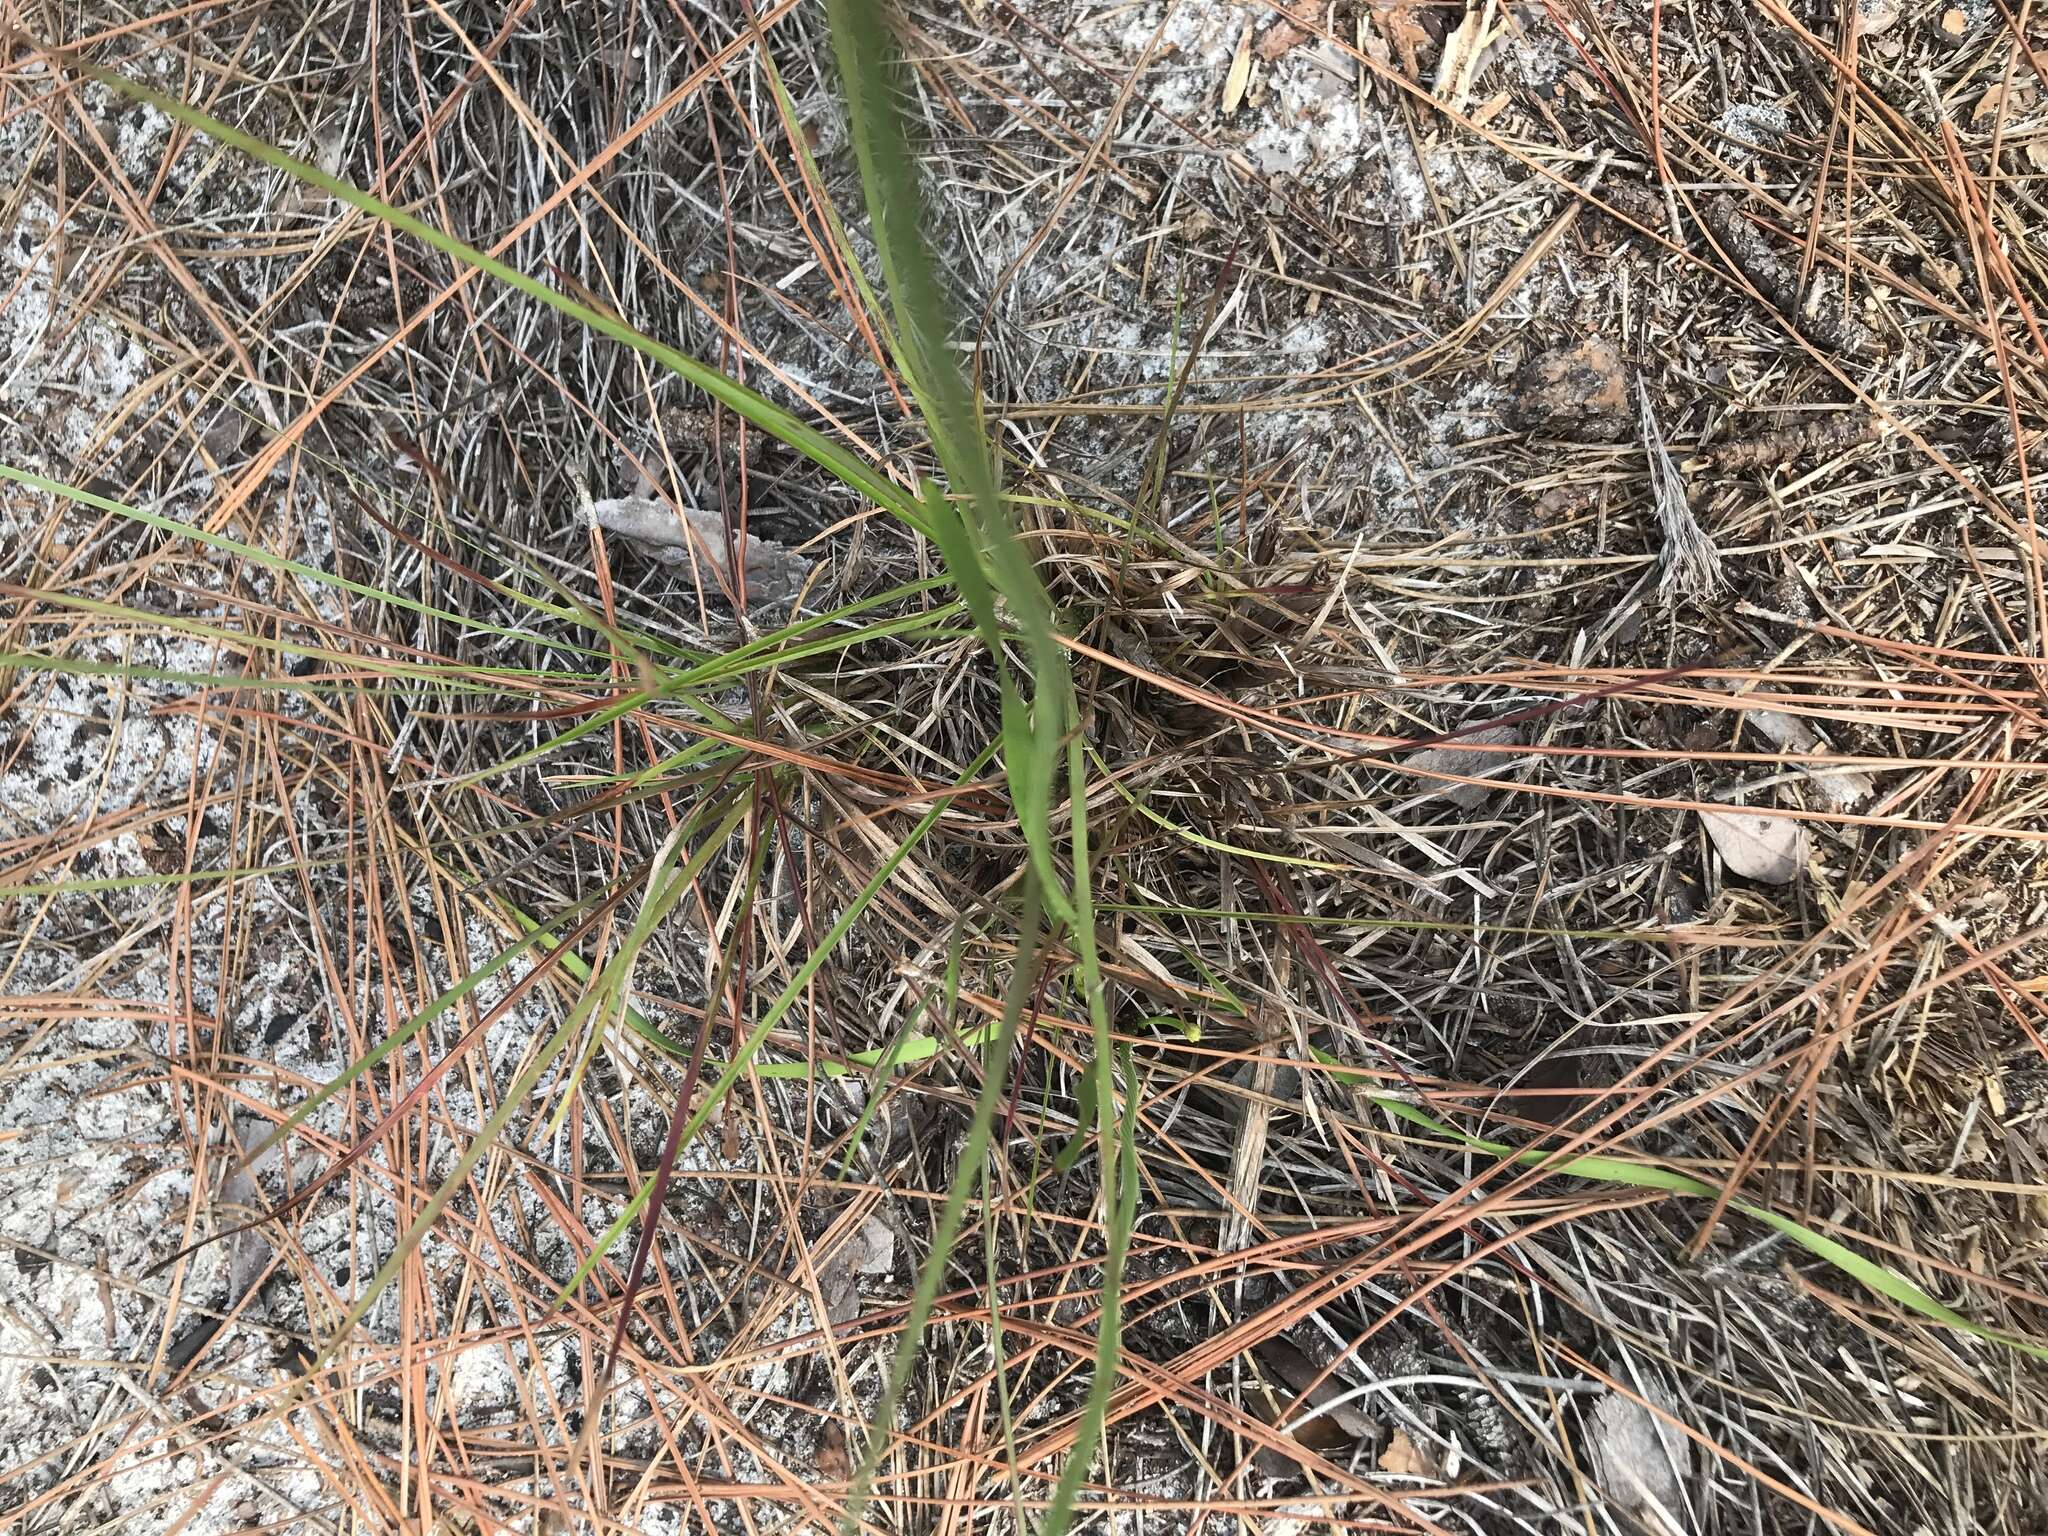 Image of Carolina yelloweyed grass